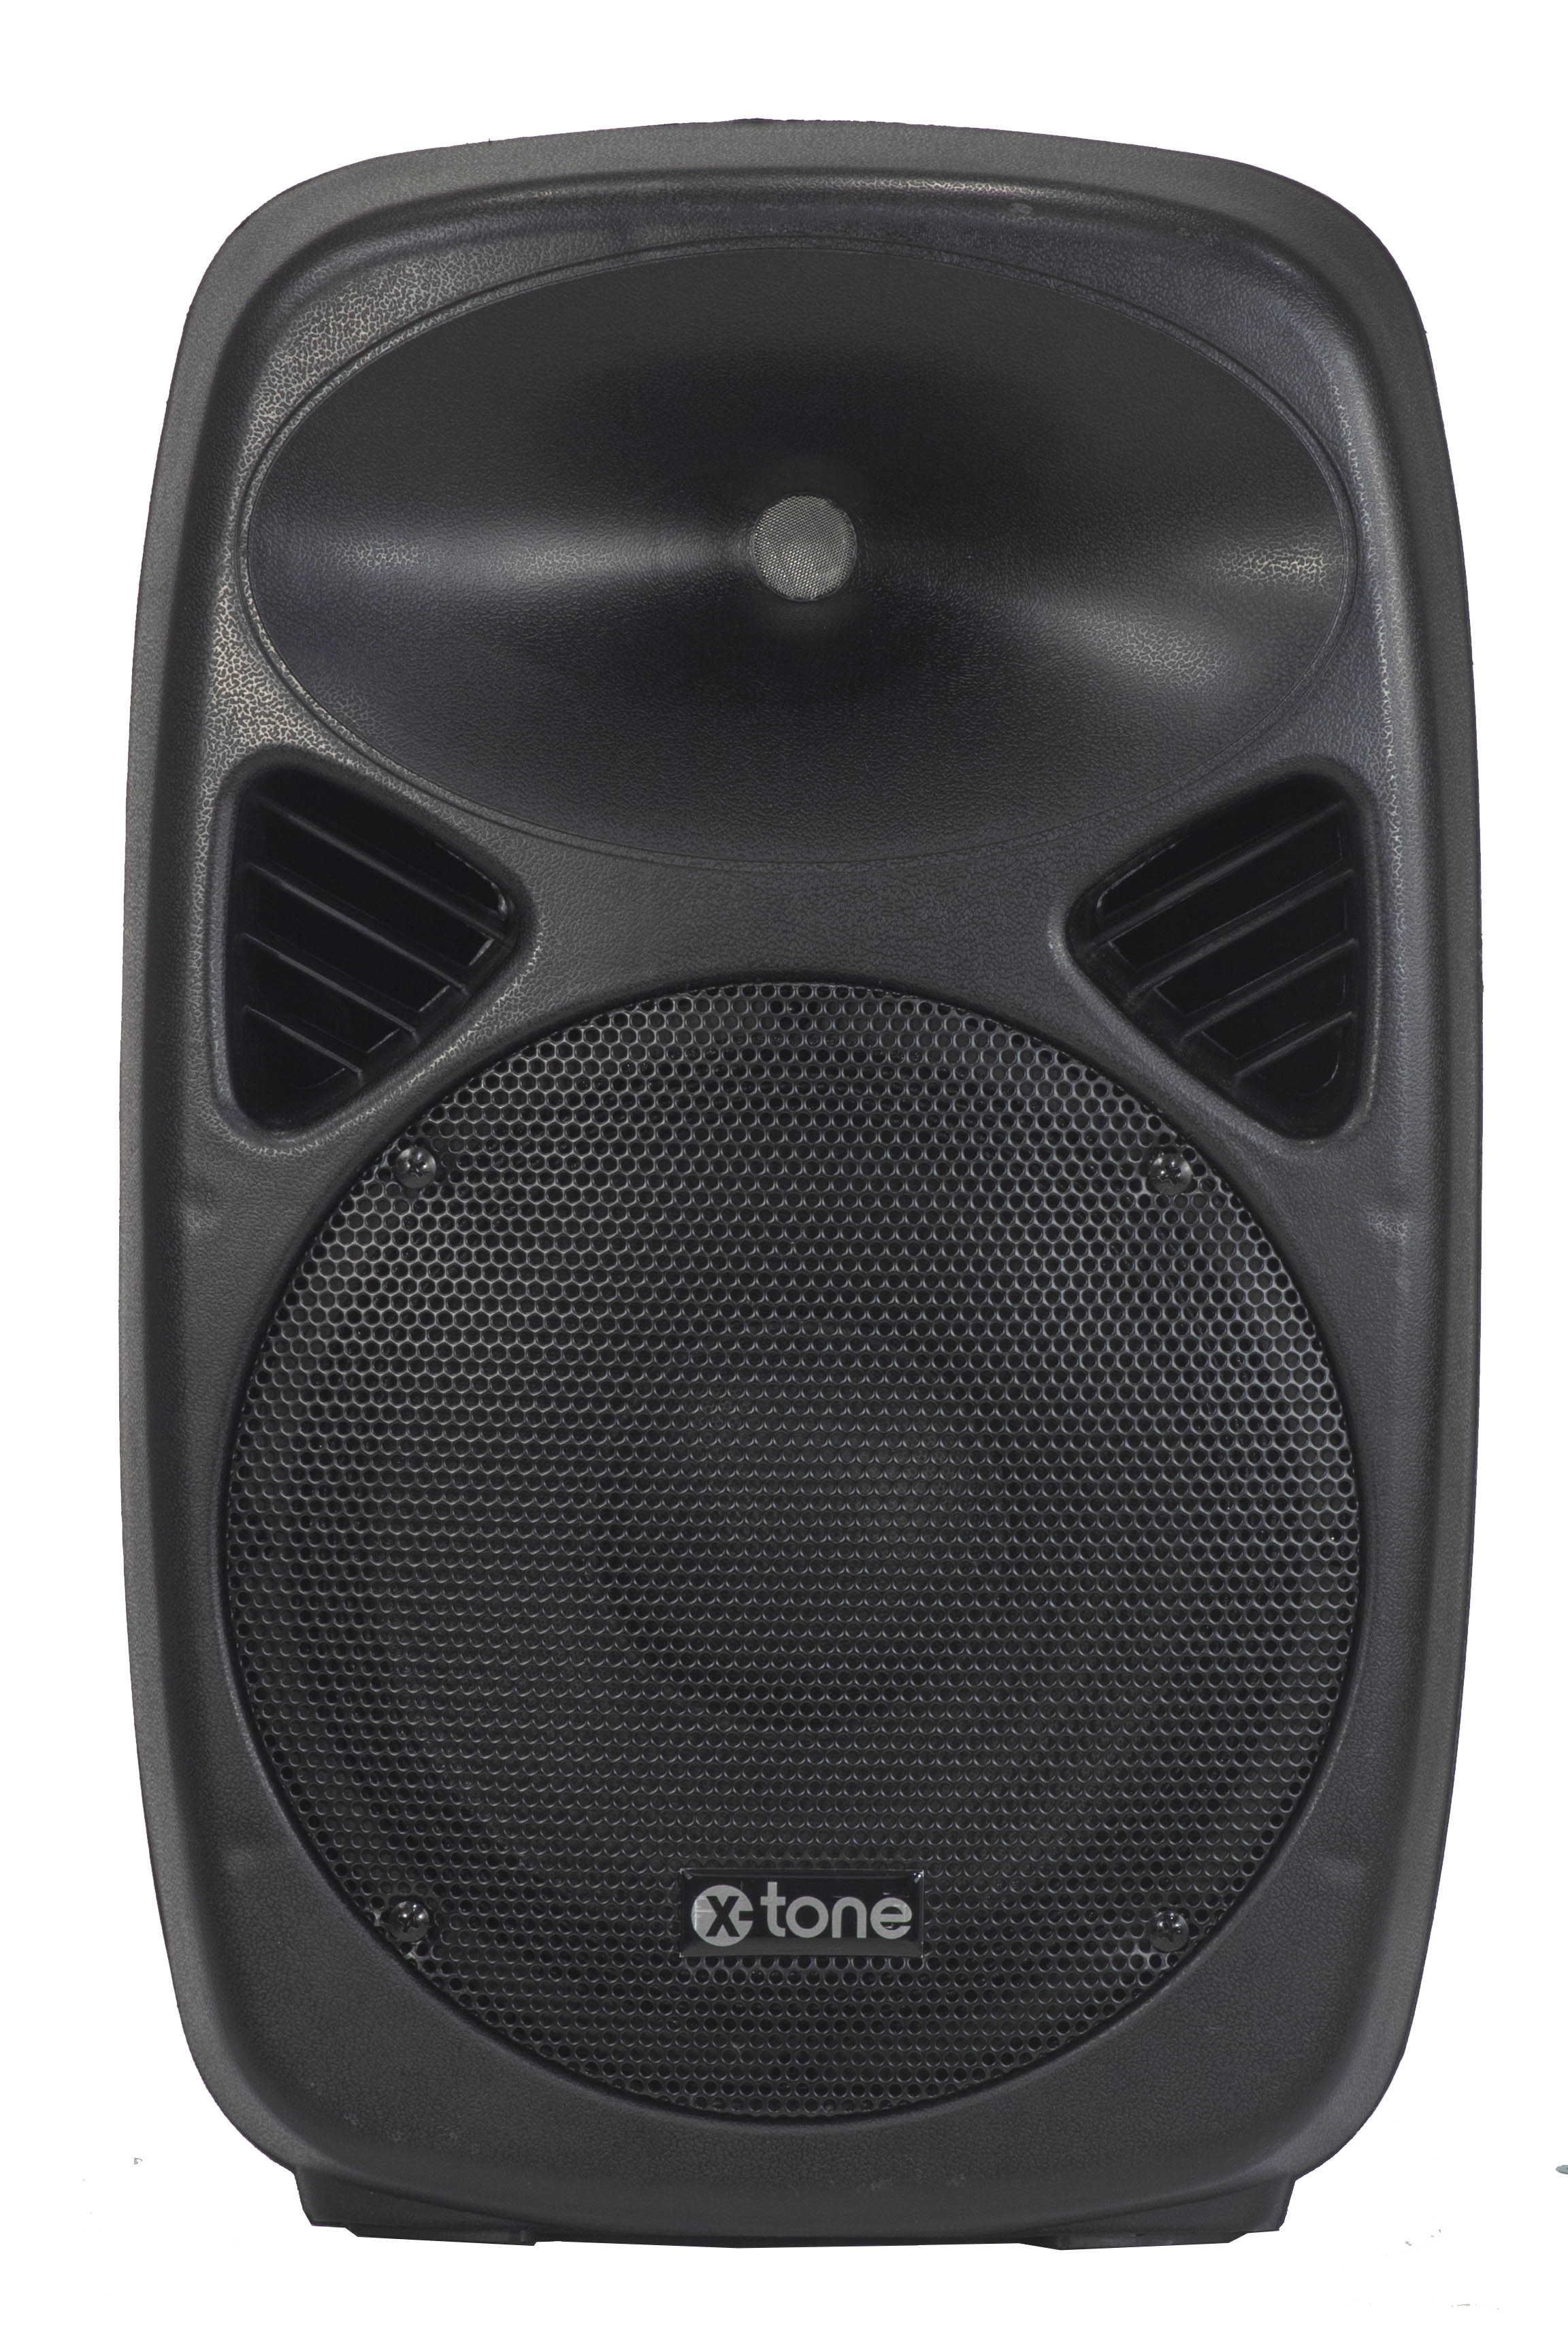 X-tone Sma-10 - Active full-range speaker - Variation 1